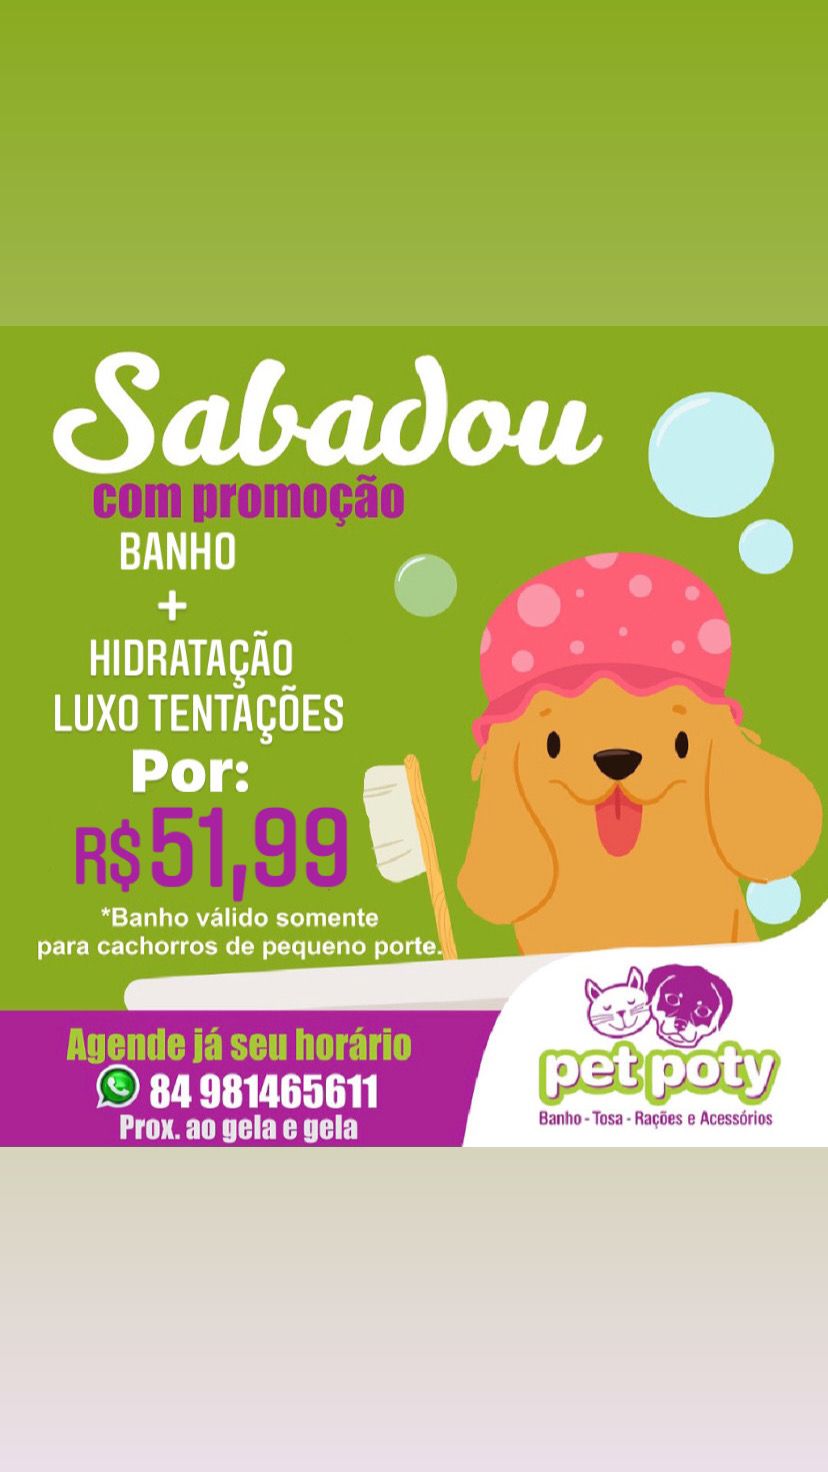 Promoção: Sabadou com promoção - Banho + Hidratação luxo tentações por apenas..